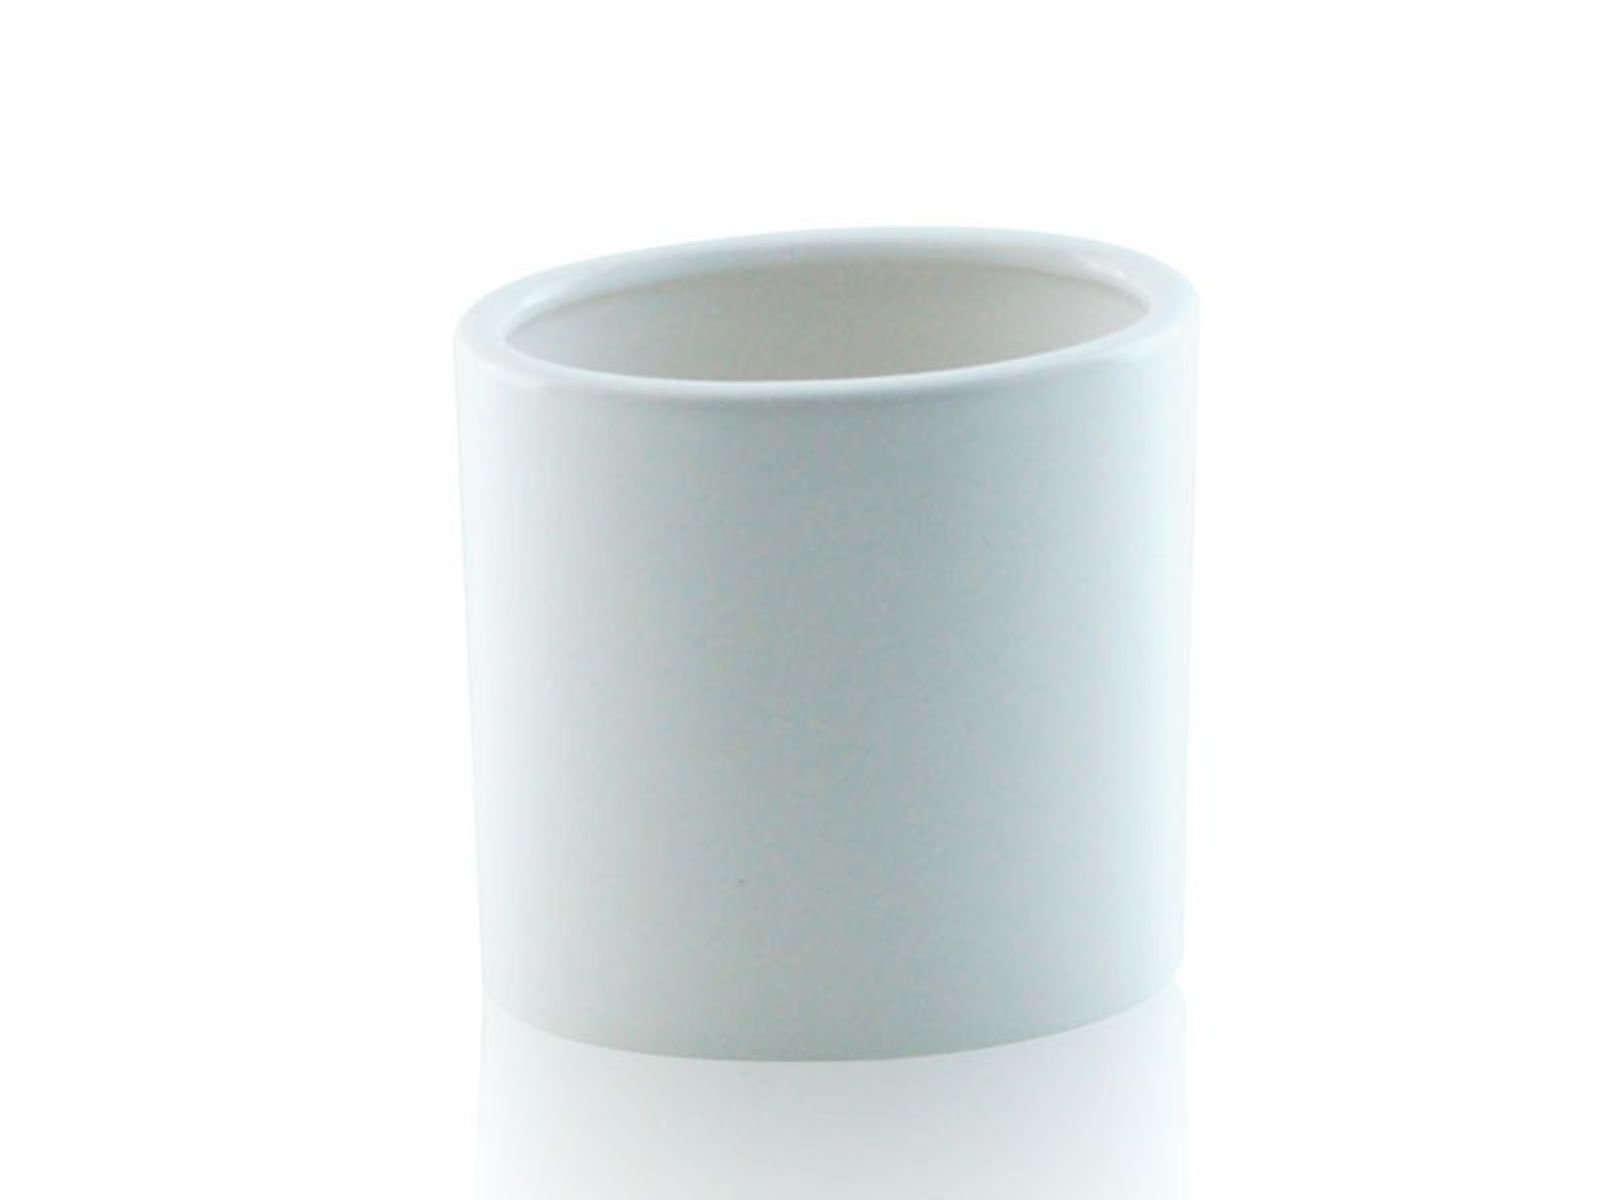 Bicchiere da appoggio ovale in ceramica - Bicchiere da appoggio ovale bianco BD-BIC-CBI-01